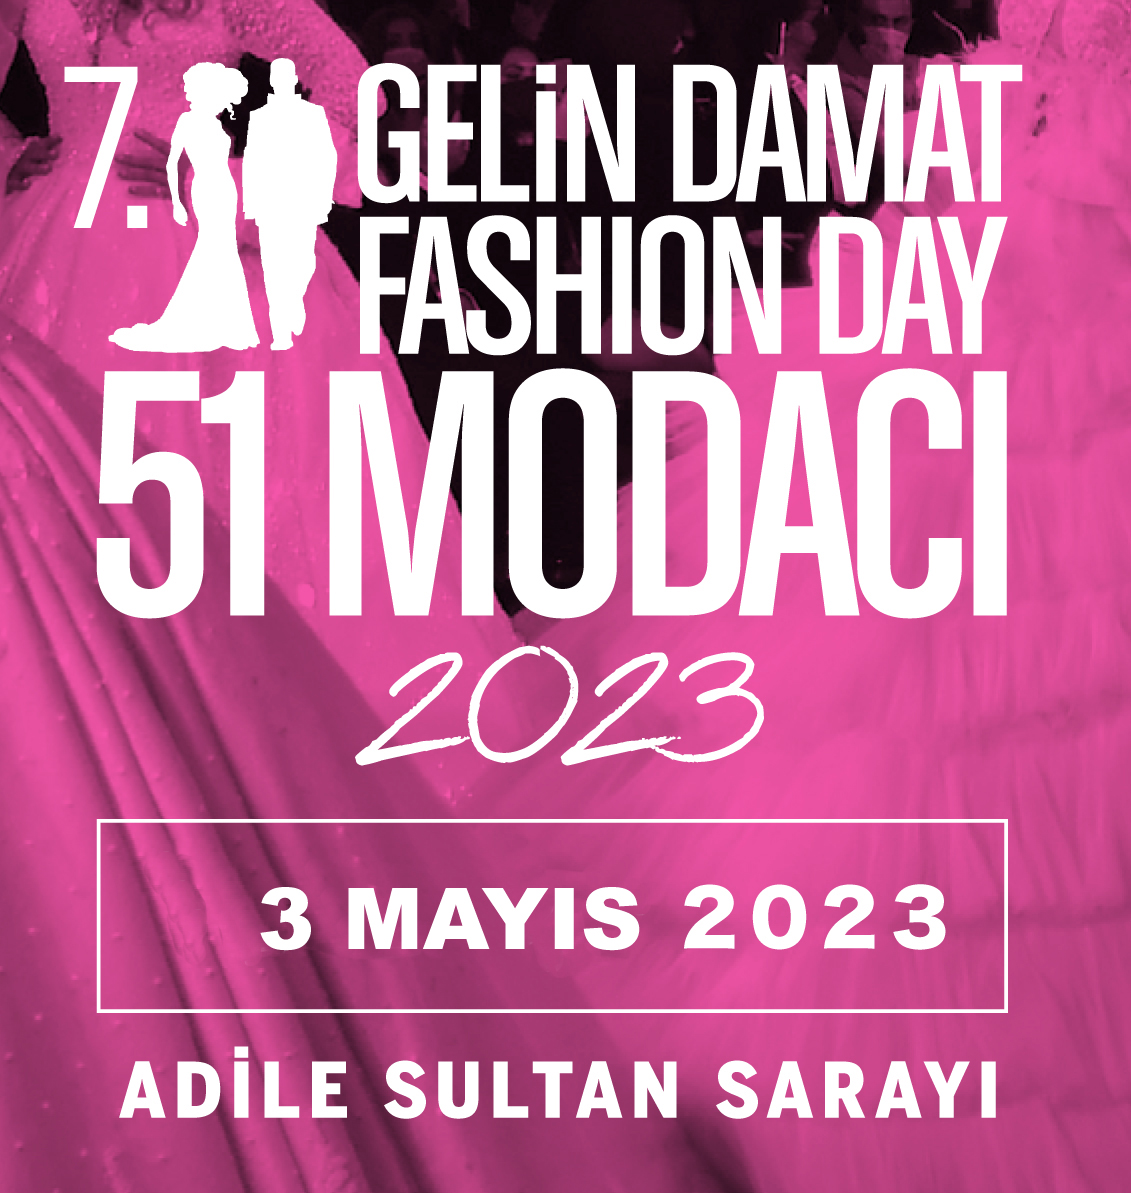 Gelin Damat Fashionday 2023 Türkiye